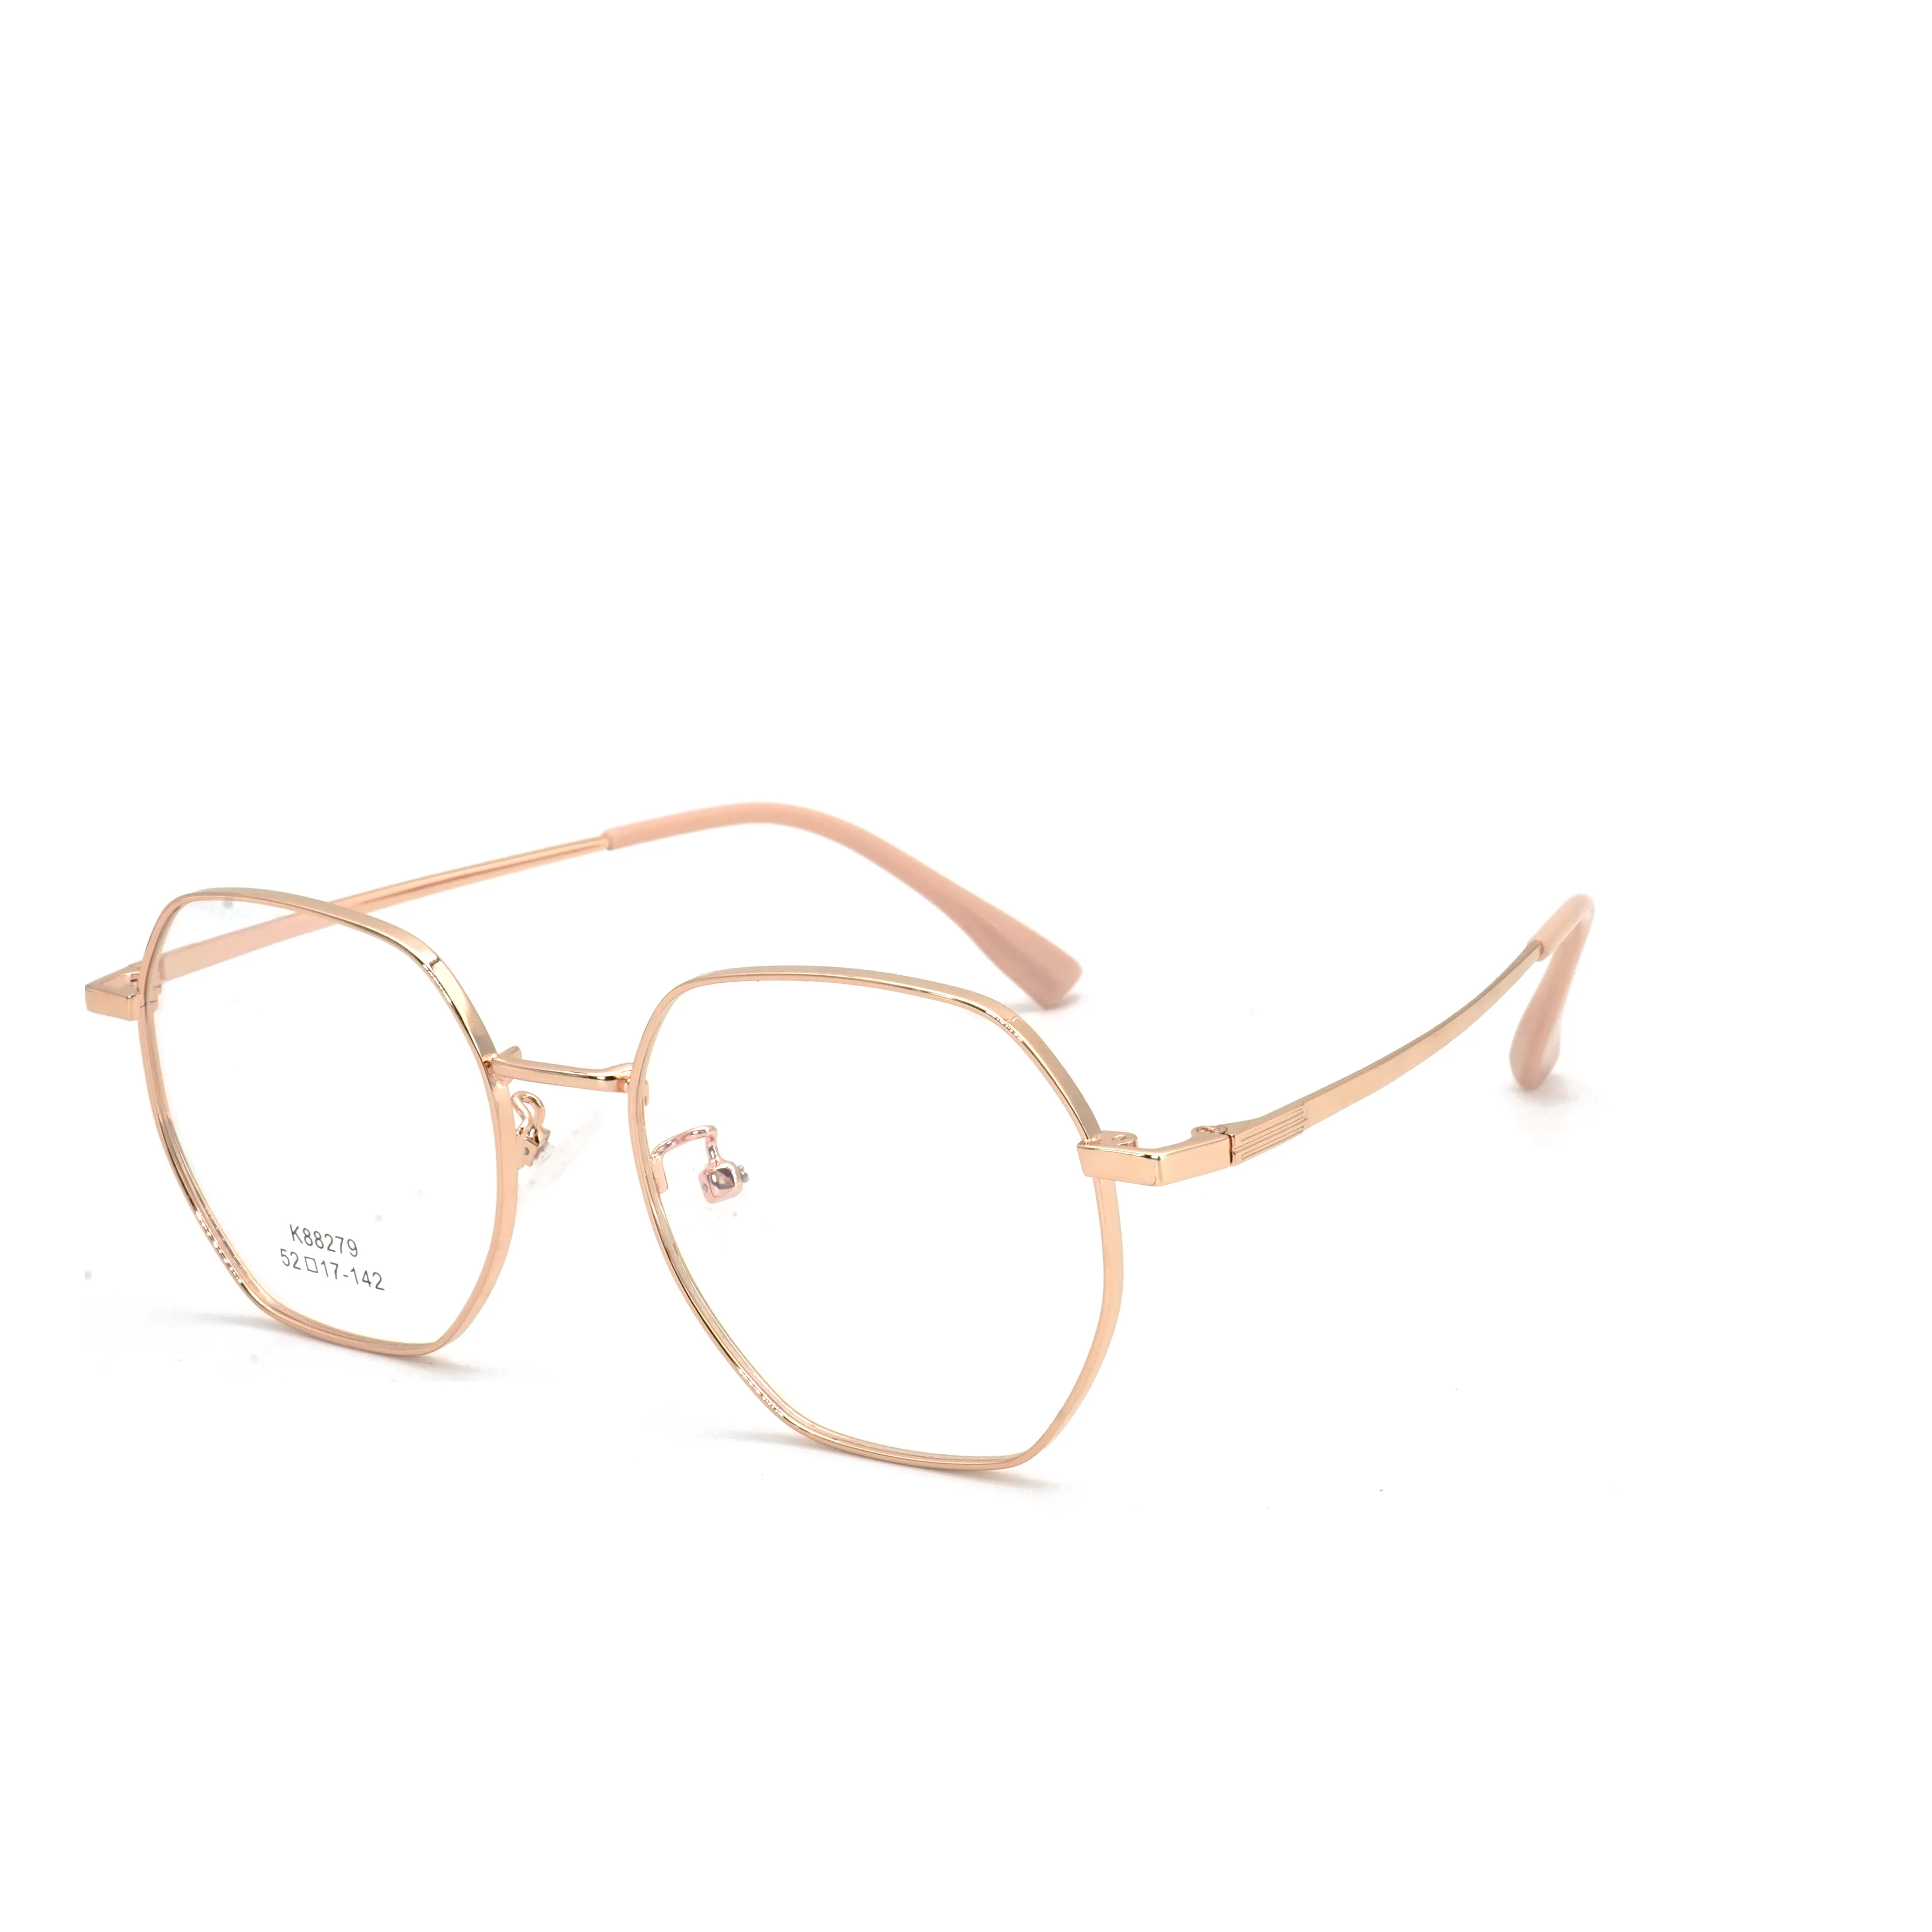 Alloy Glasses Frame Women 2020 New Korean Brand Design Men Eyewear Round Metal Spectacles Clear Eyeglasses Frames